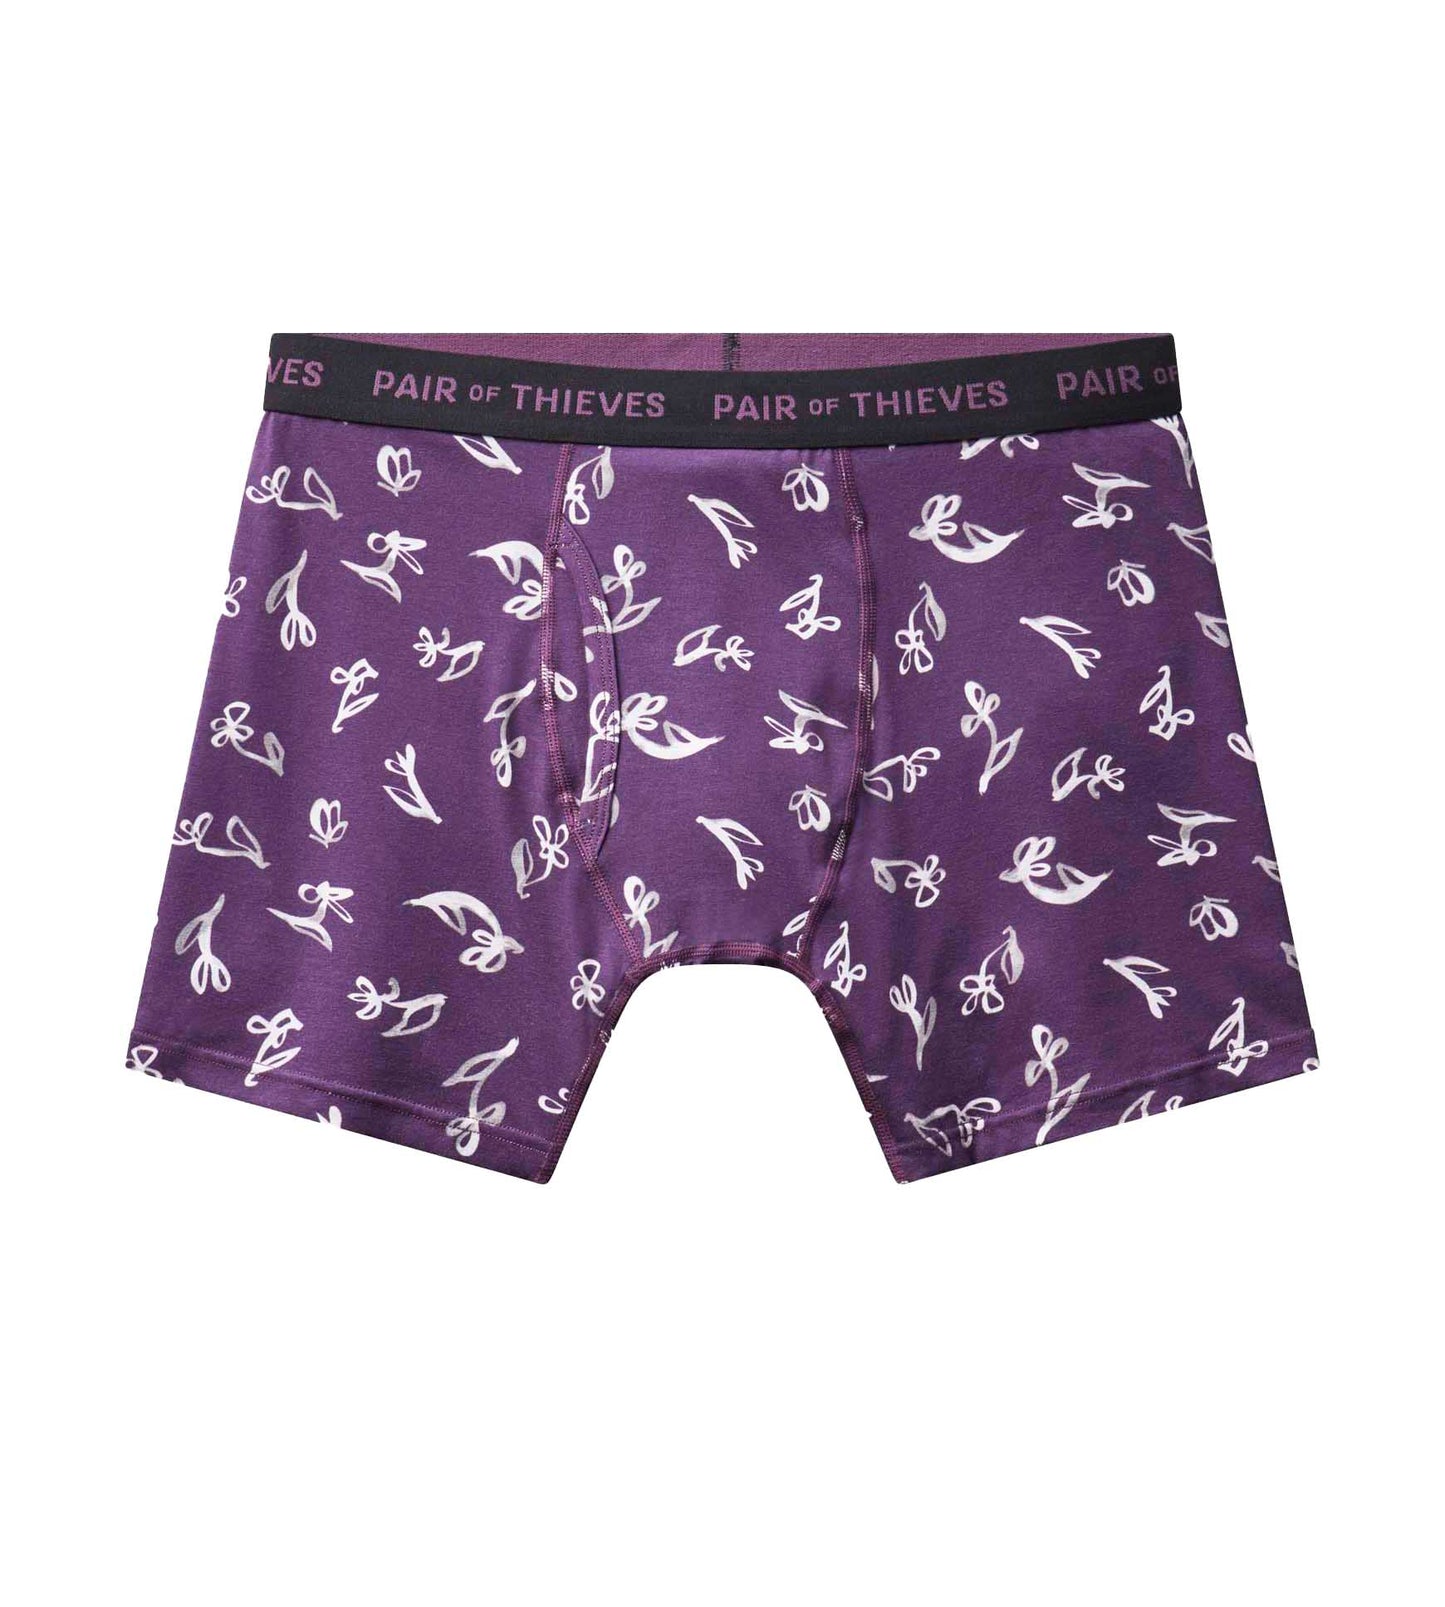 VBFOFBV Men's Underwear Boxer Briefs Soft Comfortable Trunks, Purple  Flowers Vintage Floral : : Clothing, Shoes & Accessories